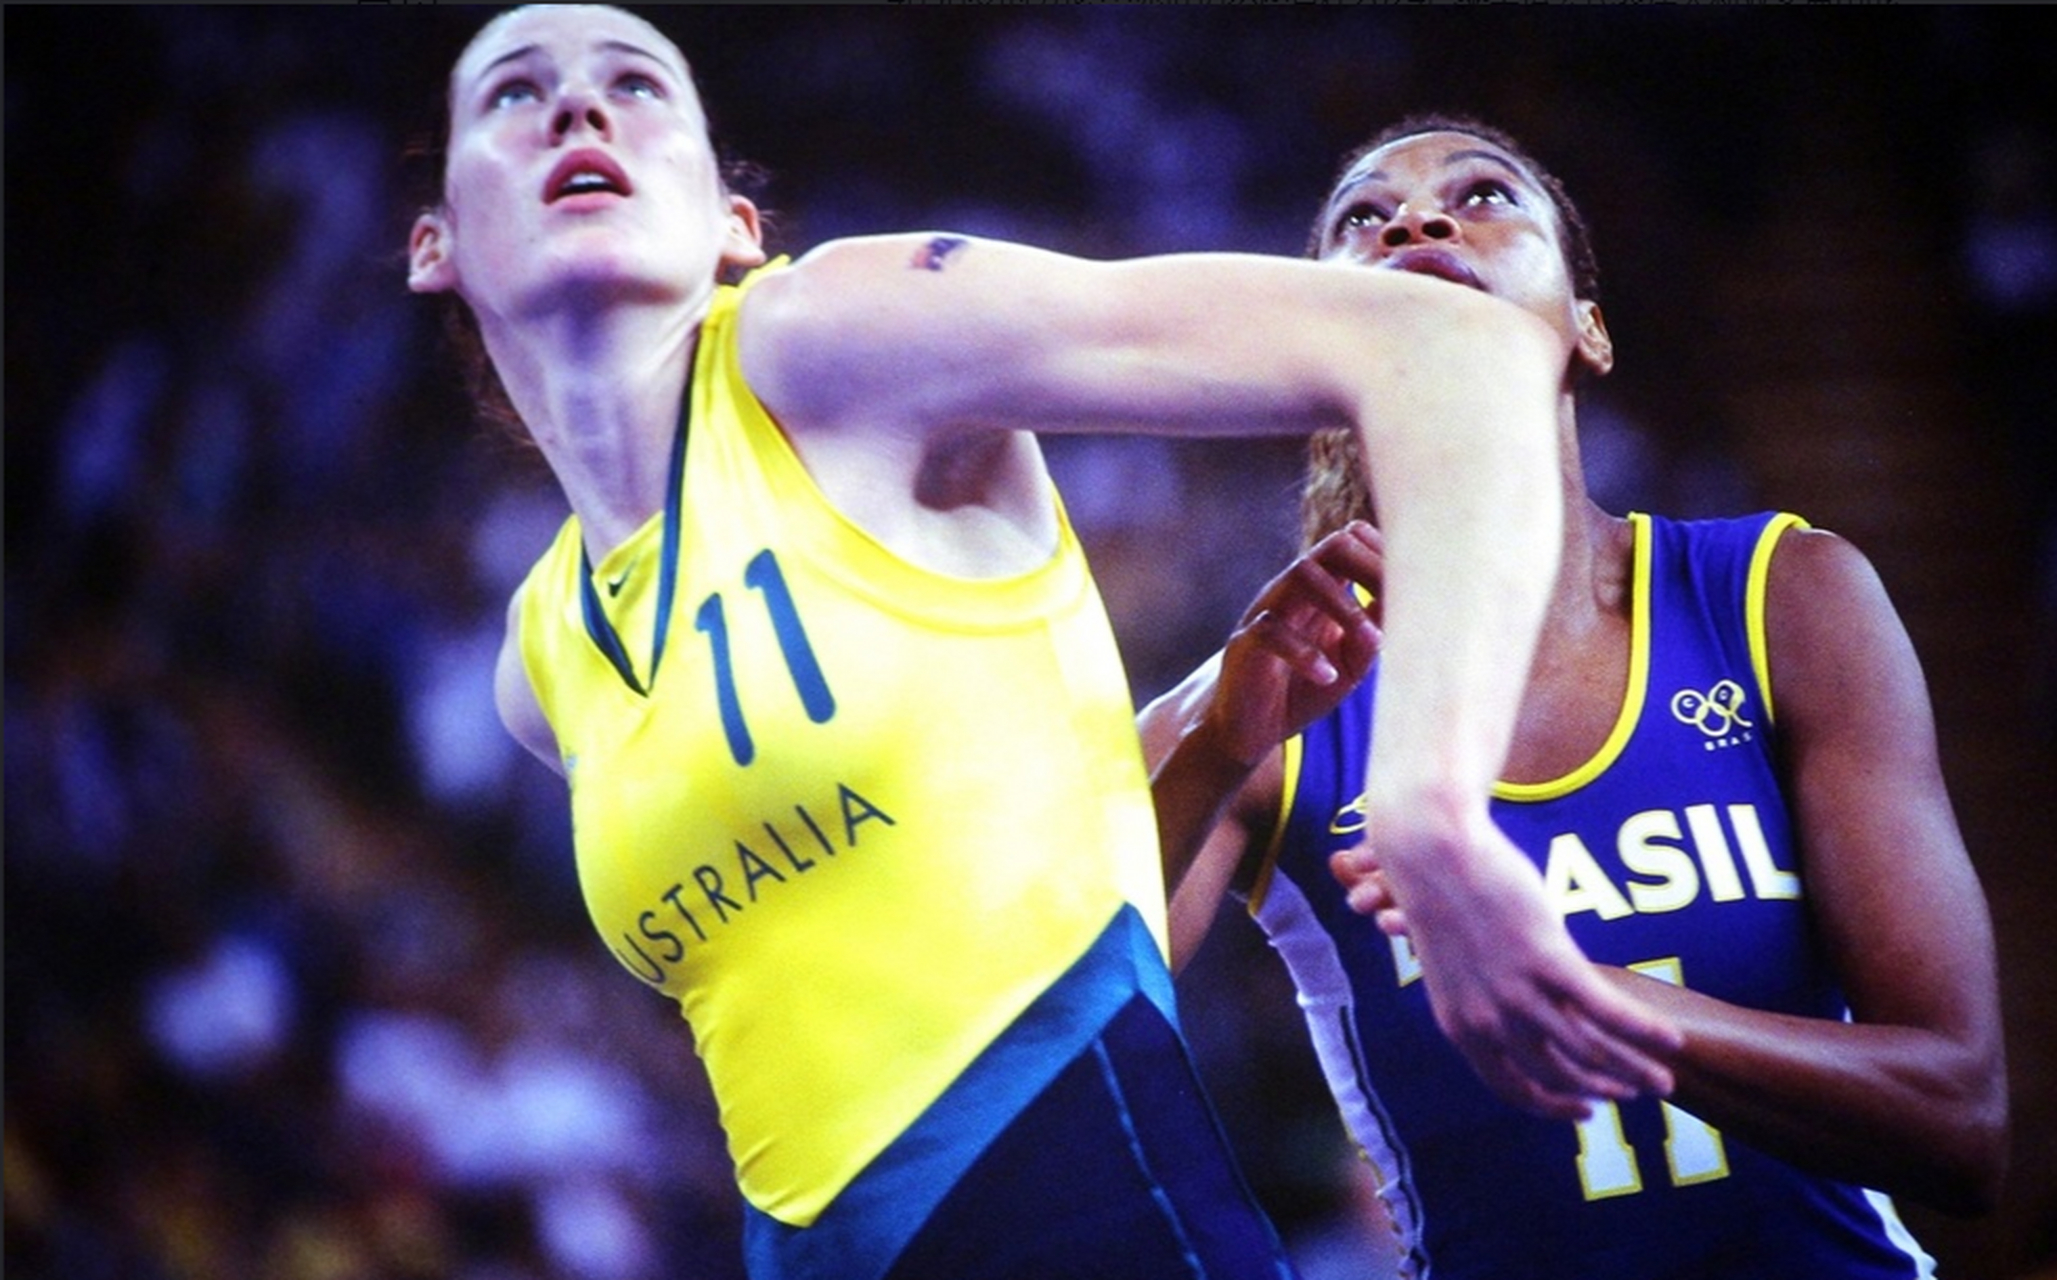 澳大利亚女篮队长劳伦图片